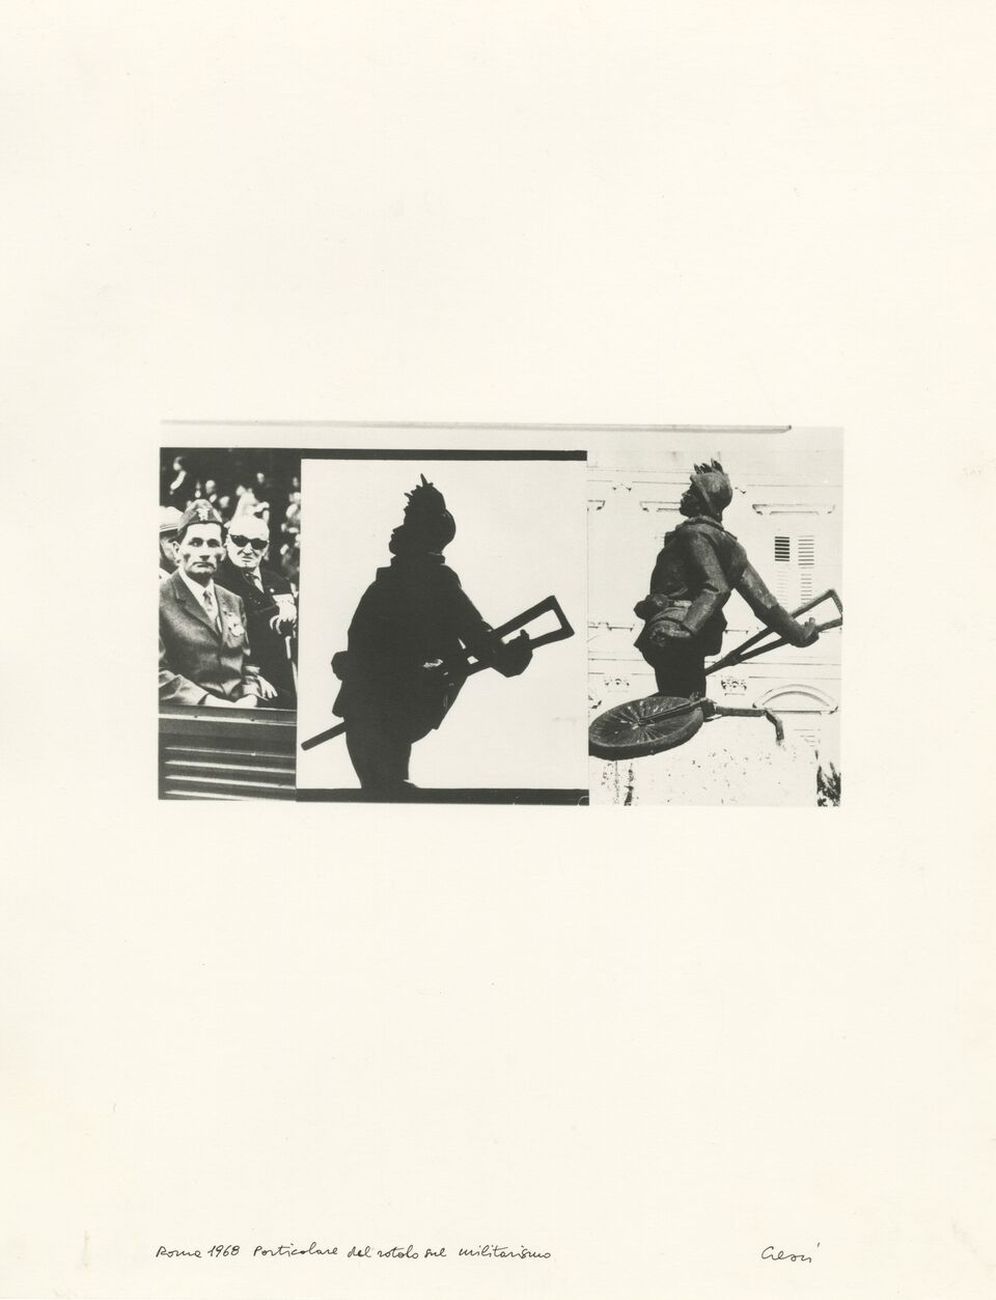 Mario Cresci, Roma, 1968, particolare del rotolo sul militarismo, 1968